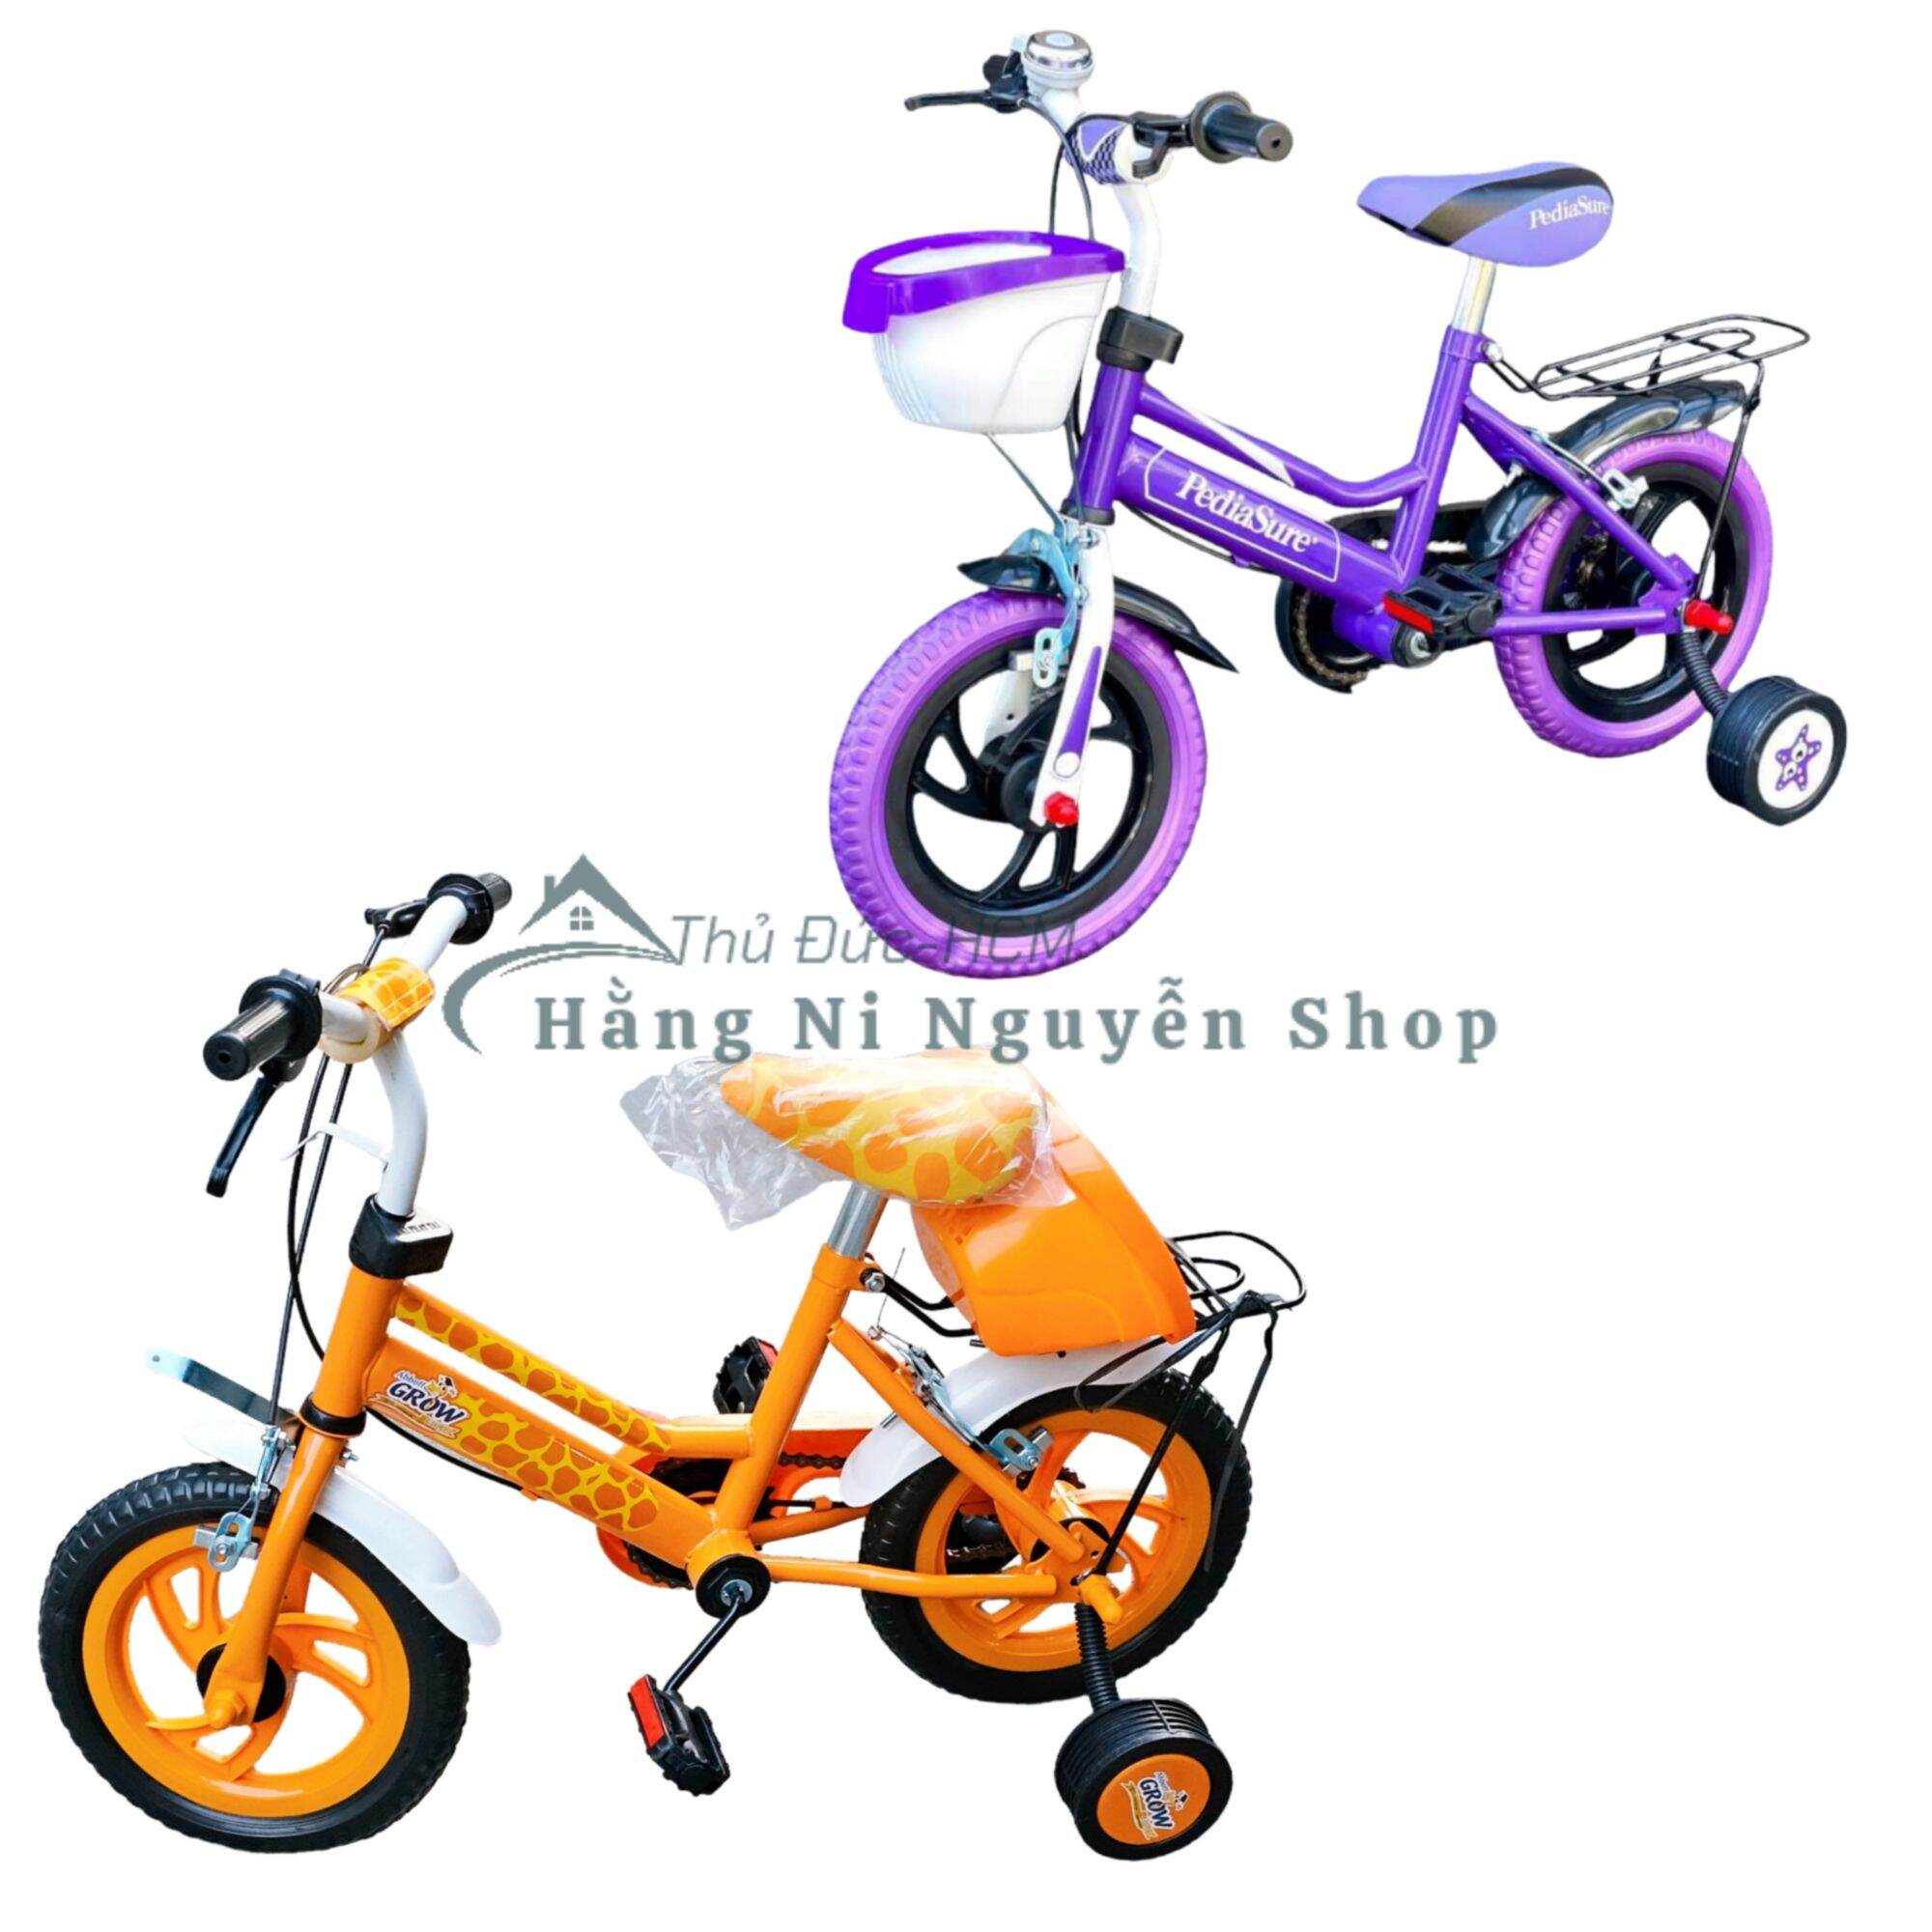 Xe đạp cho bé 2-5 tuổi 12in Nhựa Chợ Lớn yên xe nâng hạ được, có 2 bánh phụ